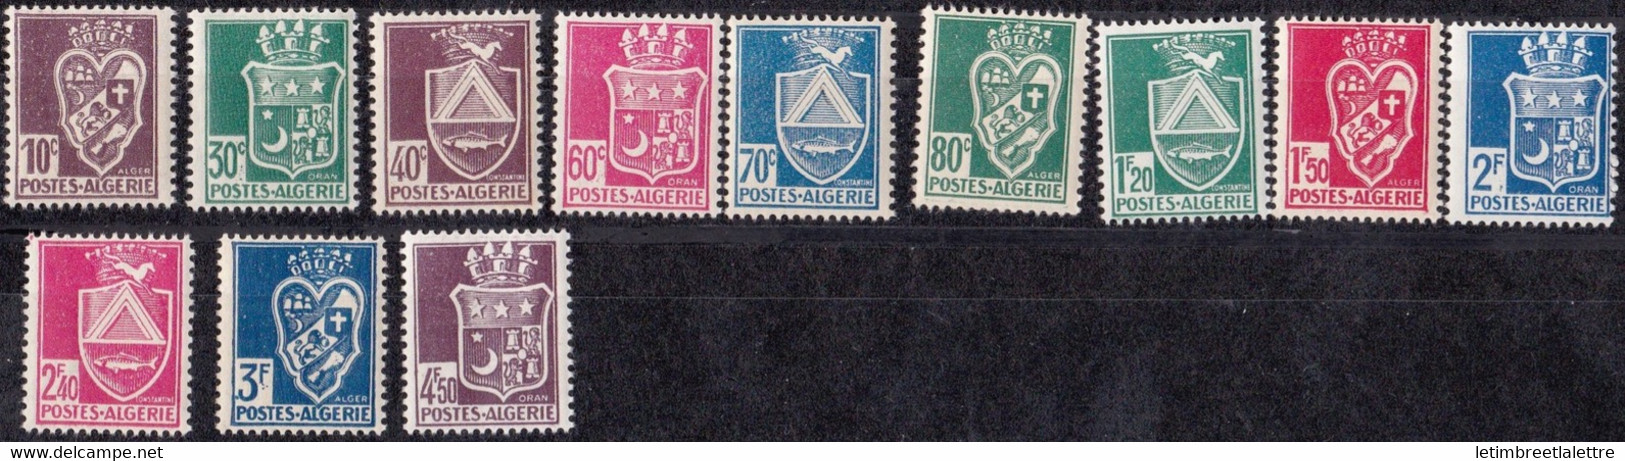 ⭐ Algérie - YT N° 184 à 195 ** - Neuf Sans Charnière - 1942 / 1945 ⭐ - Unused Stamps